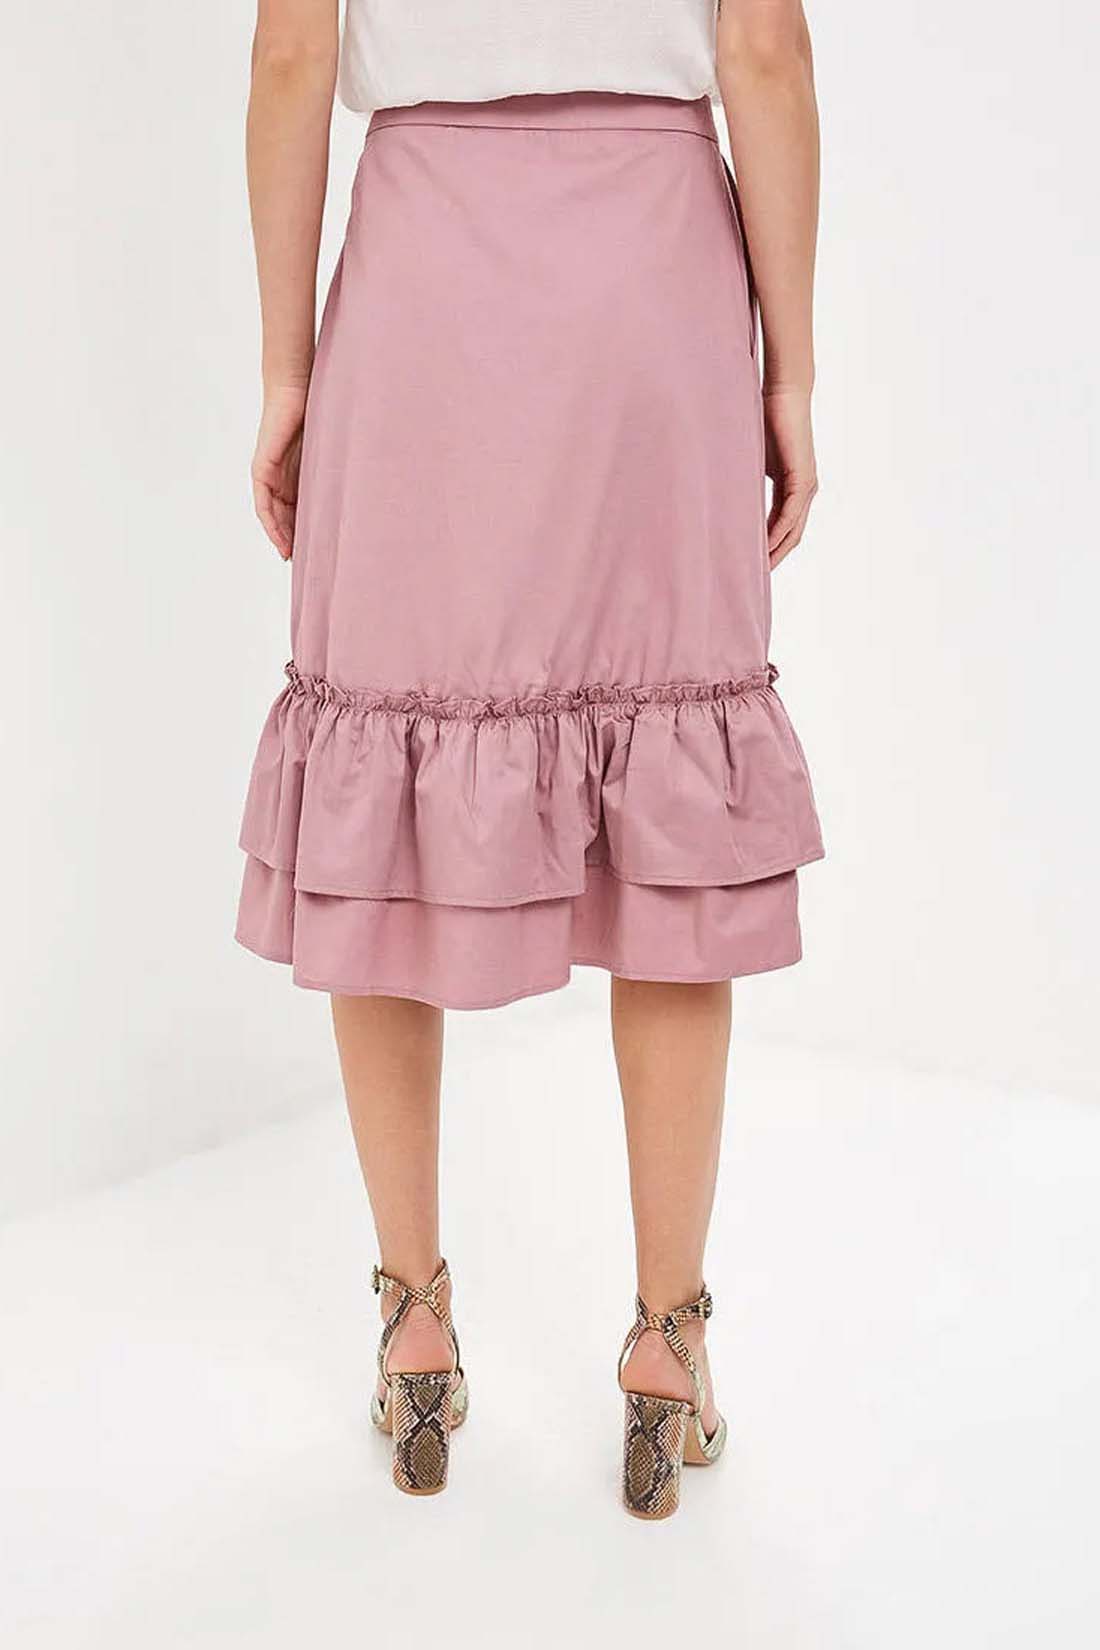 Розовая юбка с оборками (арт. baon B479018), размер M, цвет розовый Розовая юбка с оборками (арт. baon B479018) - фото 2